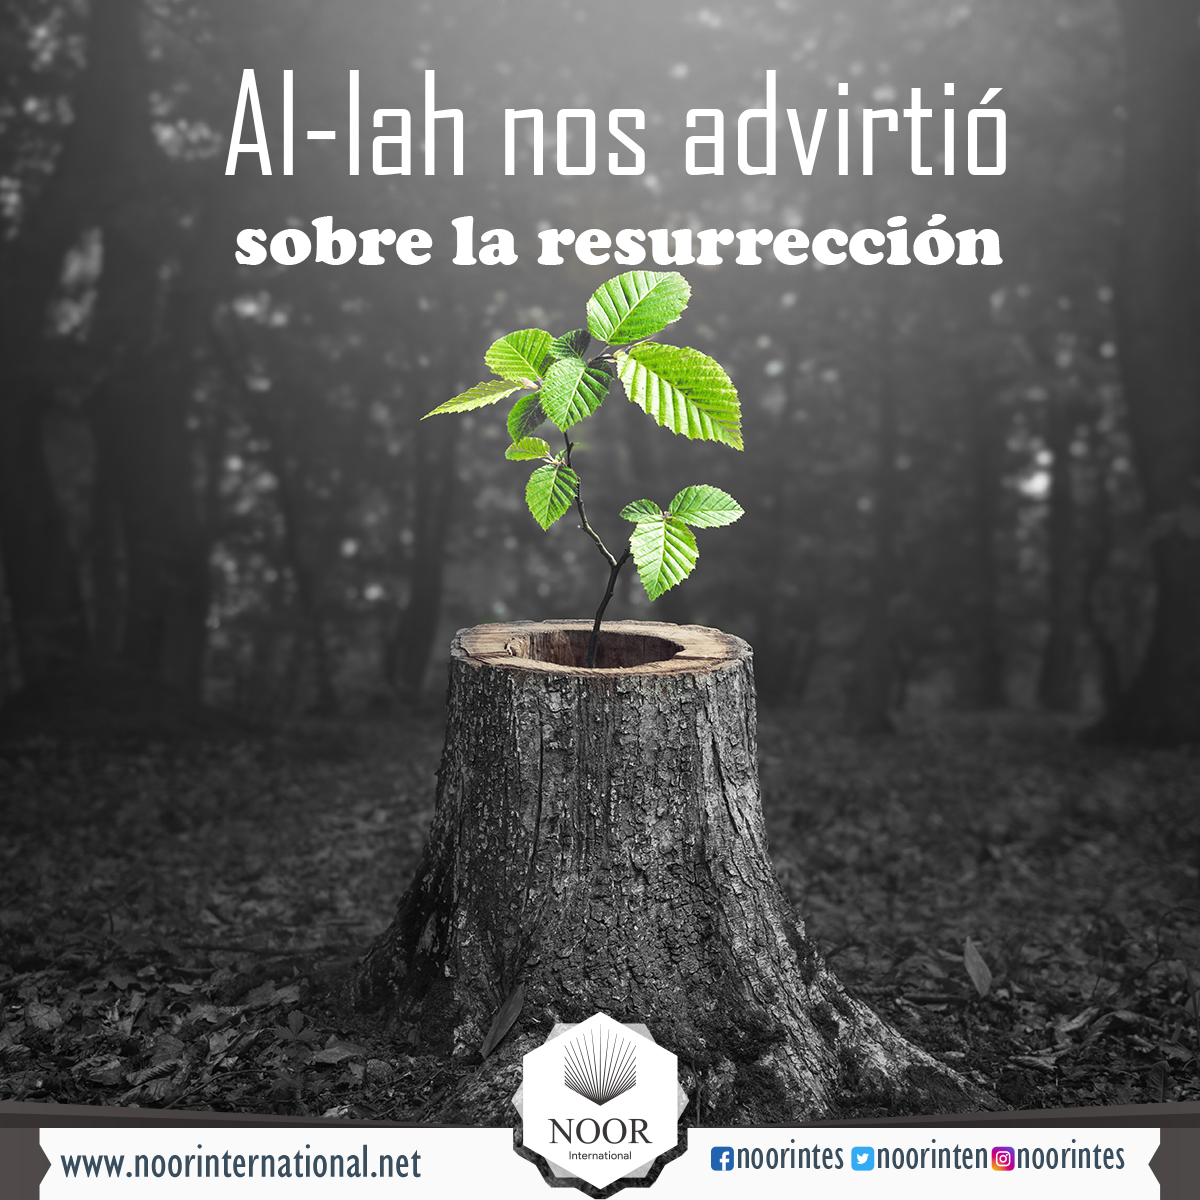 Al-lah nos advirtió sobre la resurrección